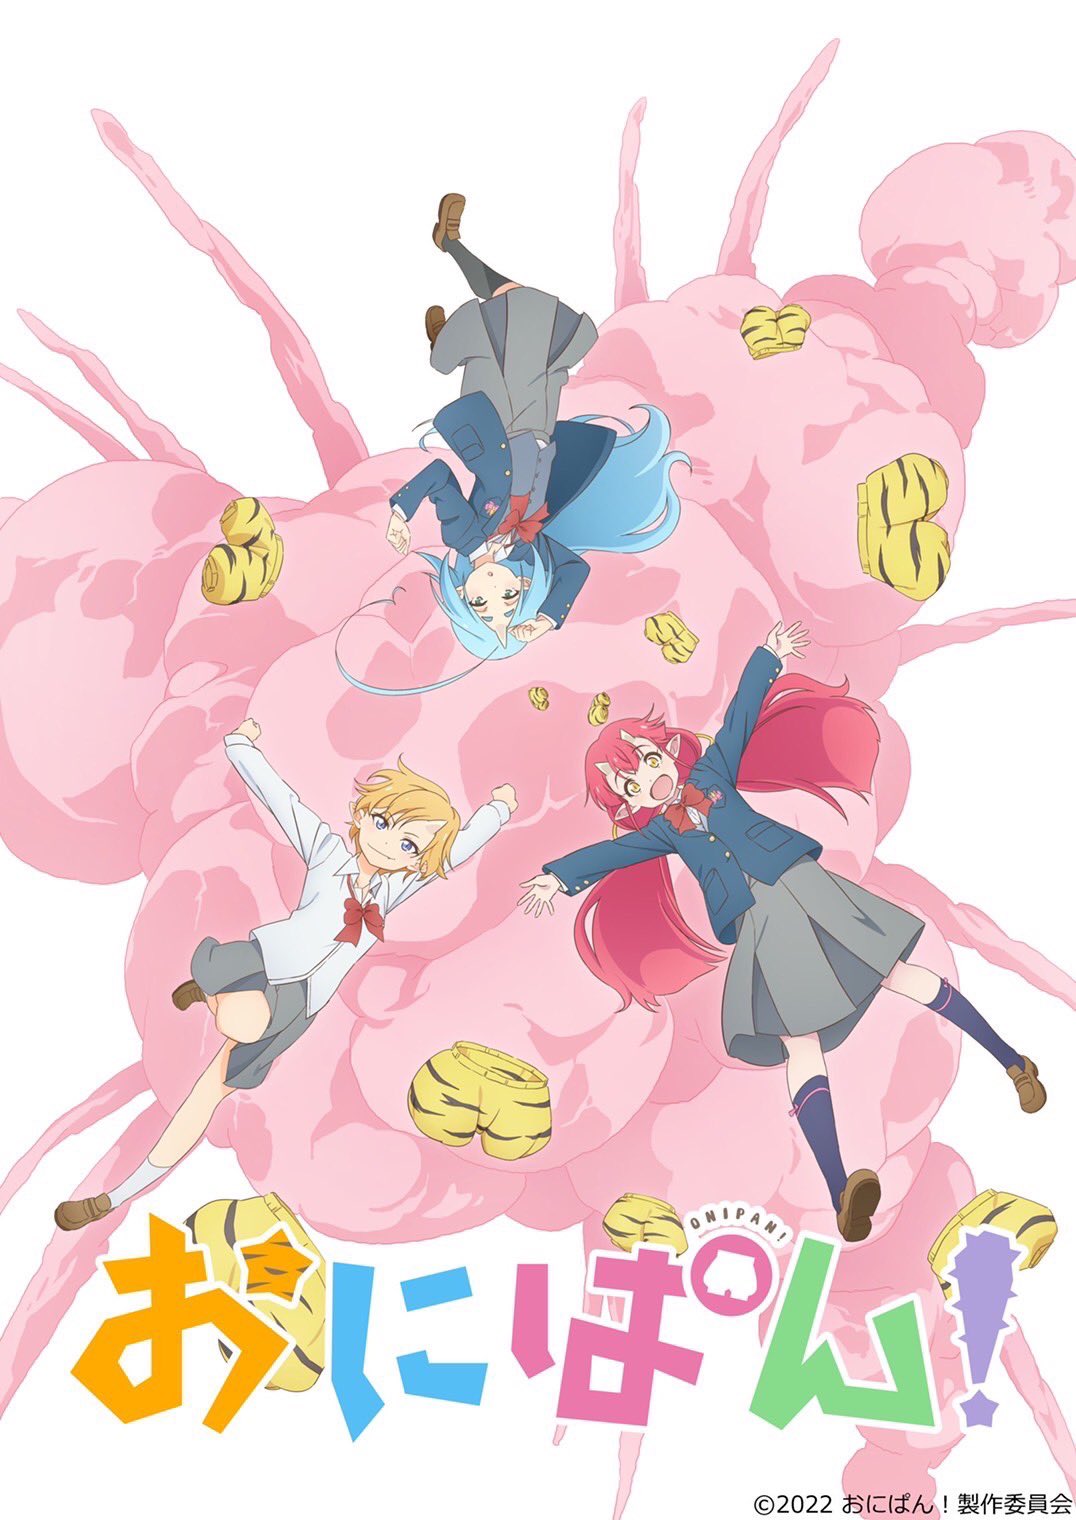 Onipan-KV Demon Girl Slice of Life Anime "Onipan!" Out This Spring!!